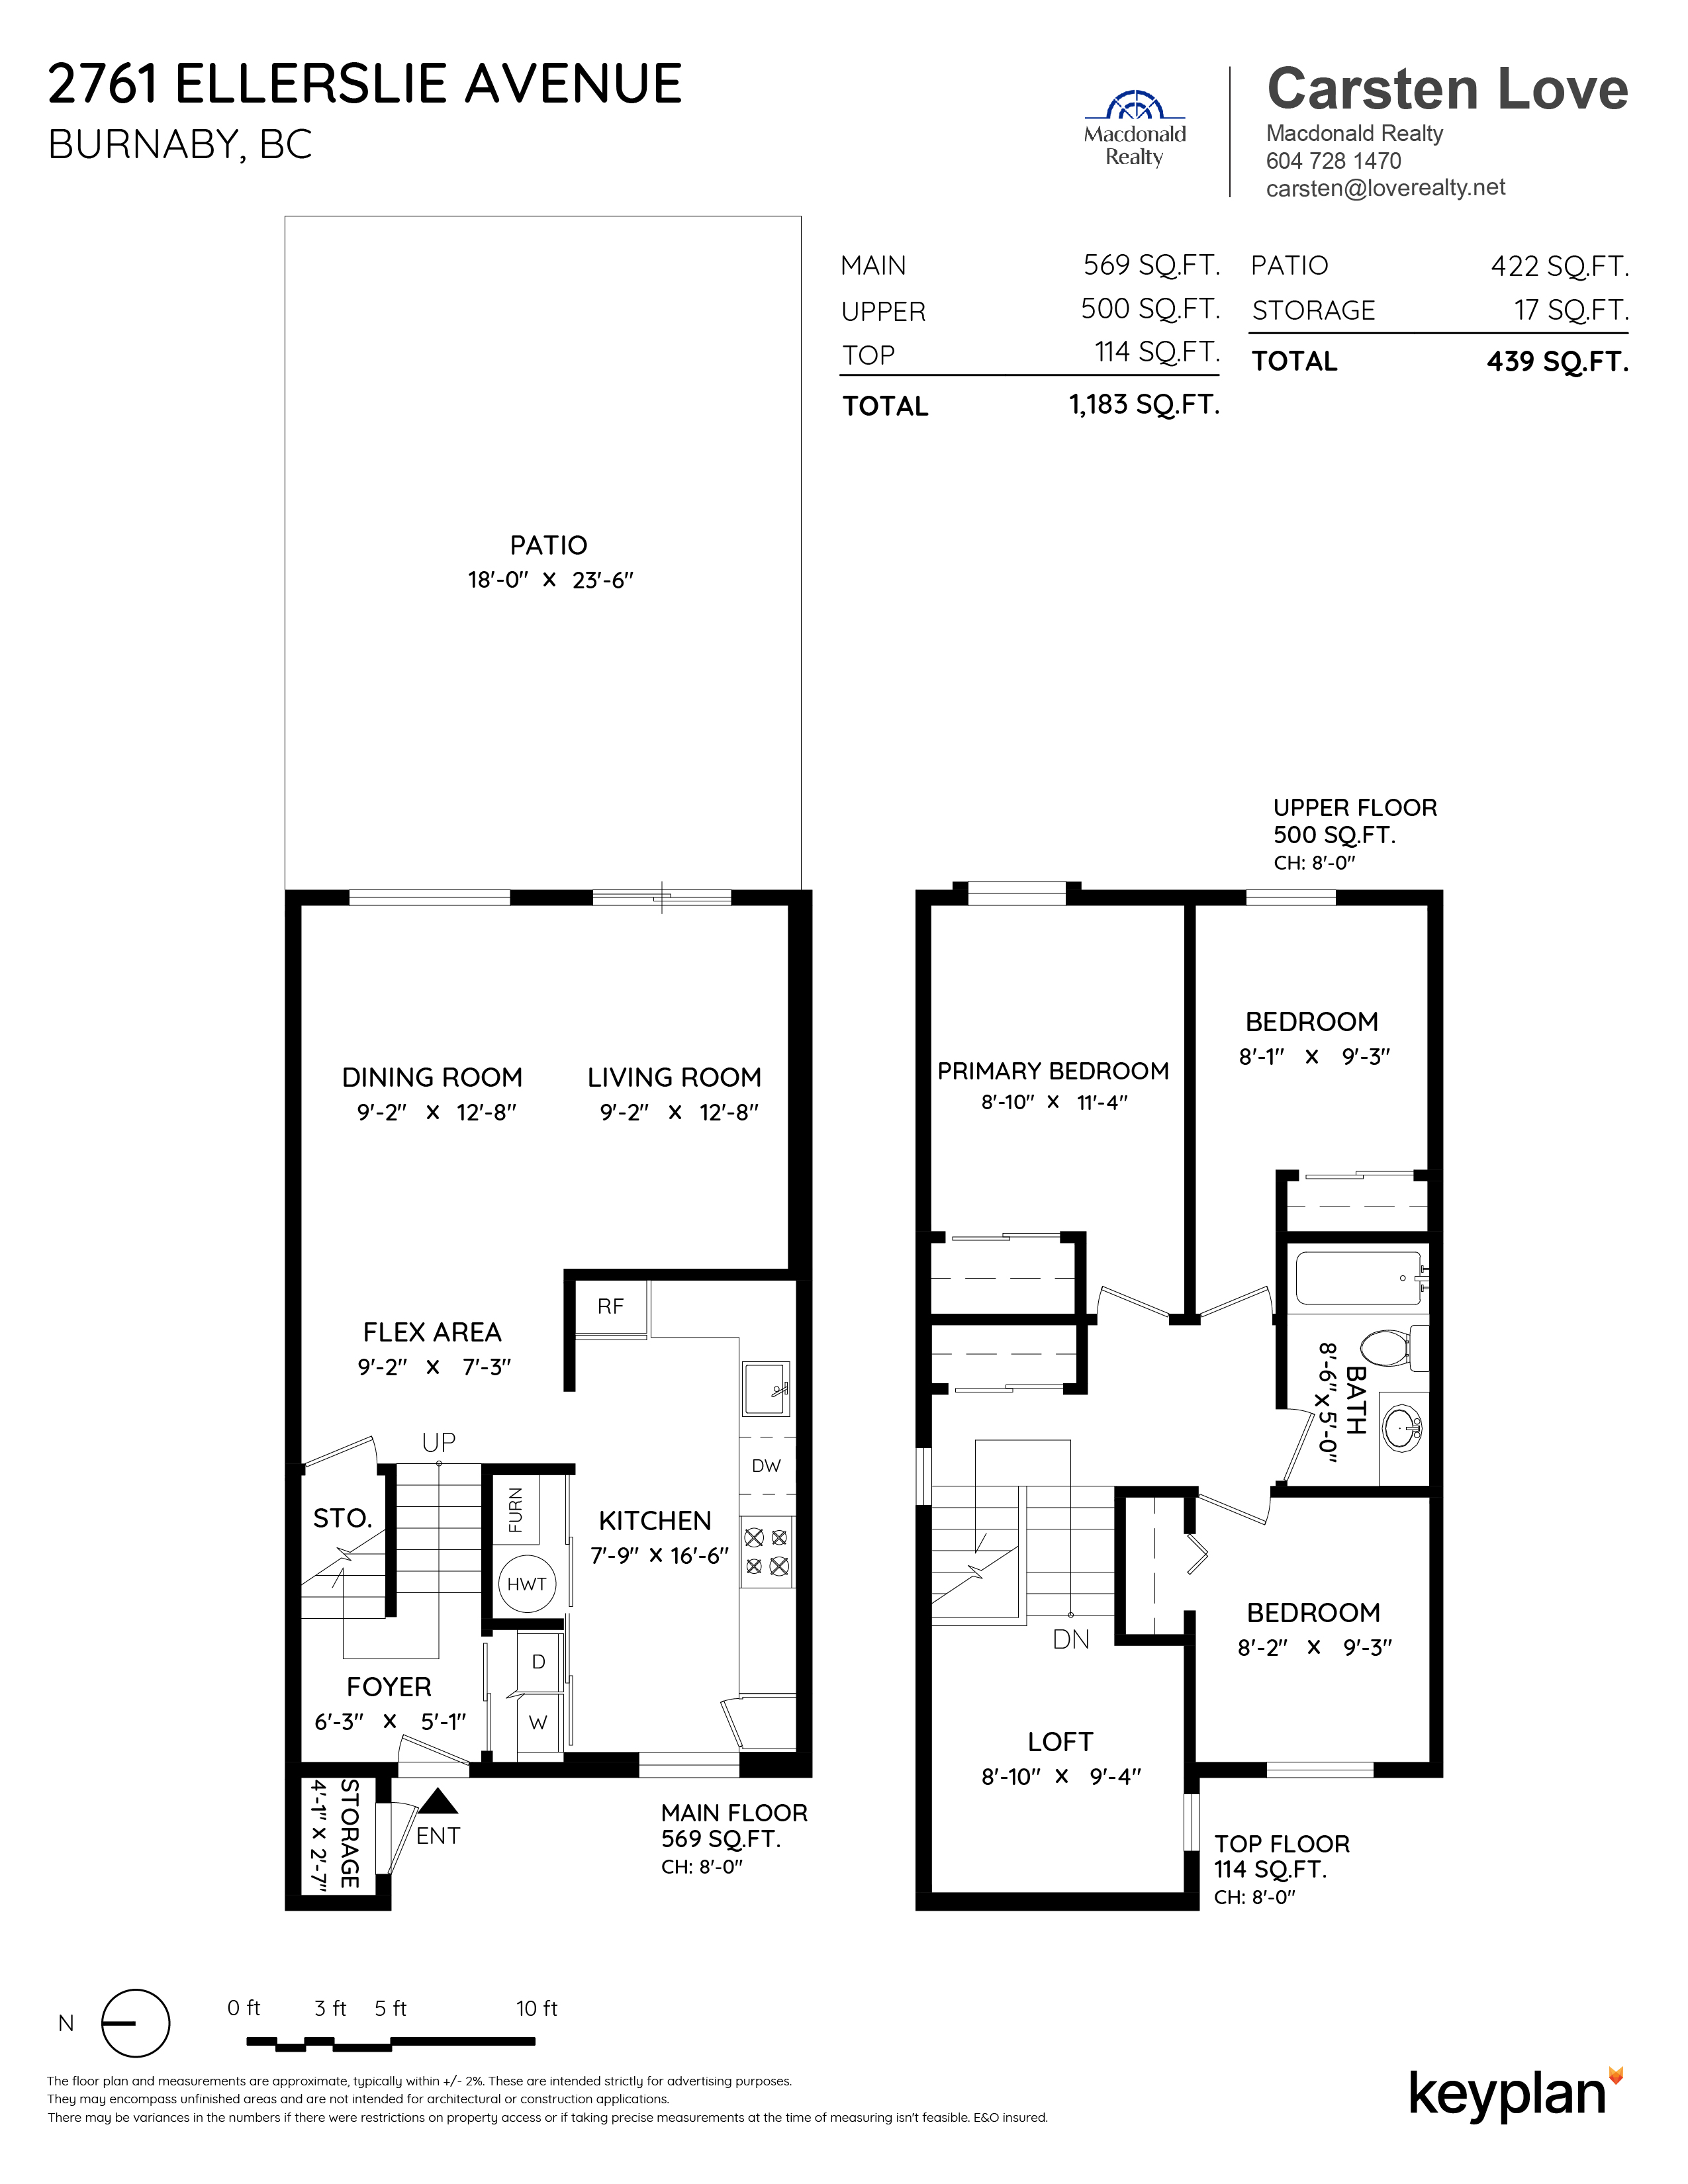 Derek & Carsten Love - 2761 Ellerslie Avenue, Burnaby, BC, Canada | Floor Plan 1